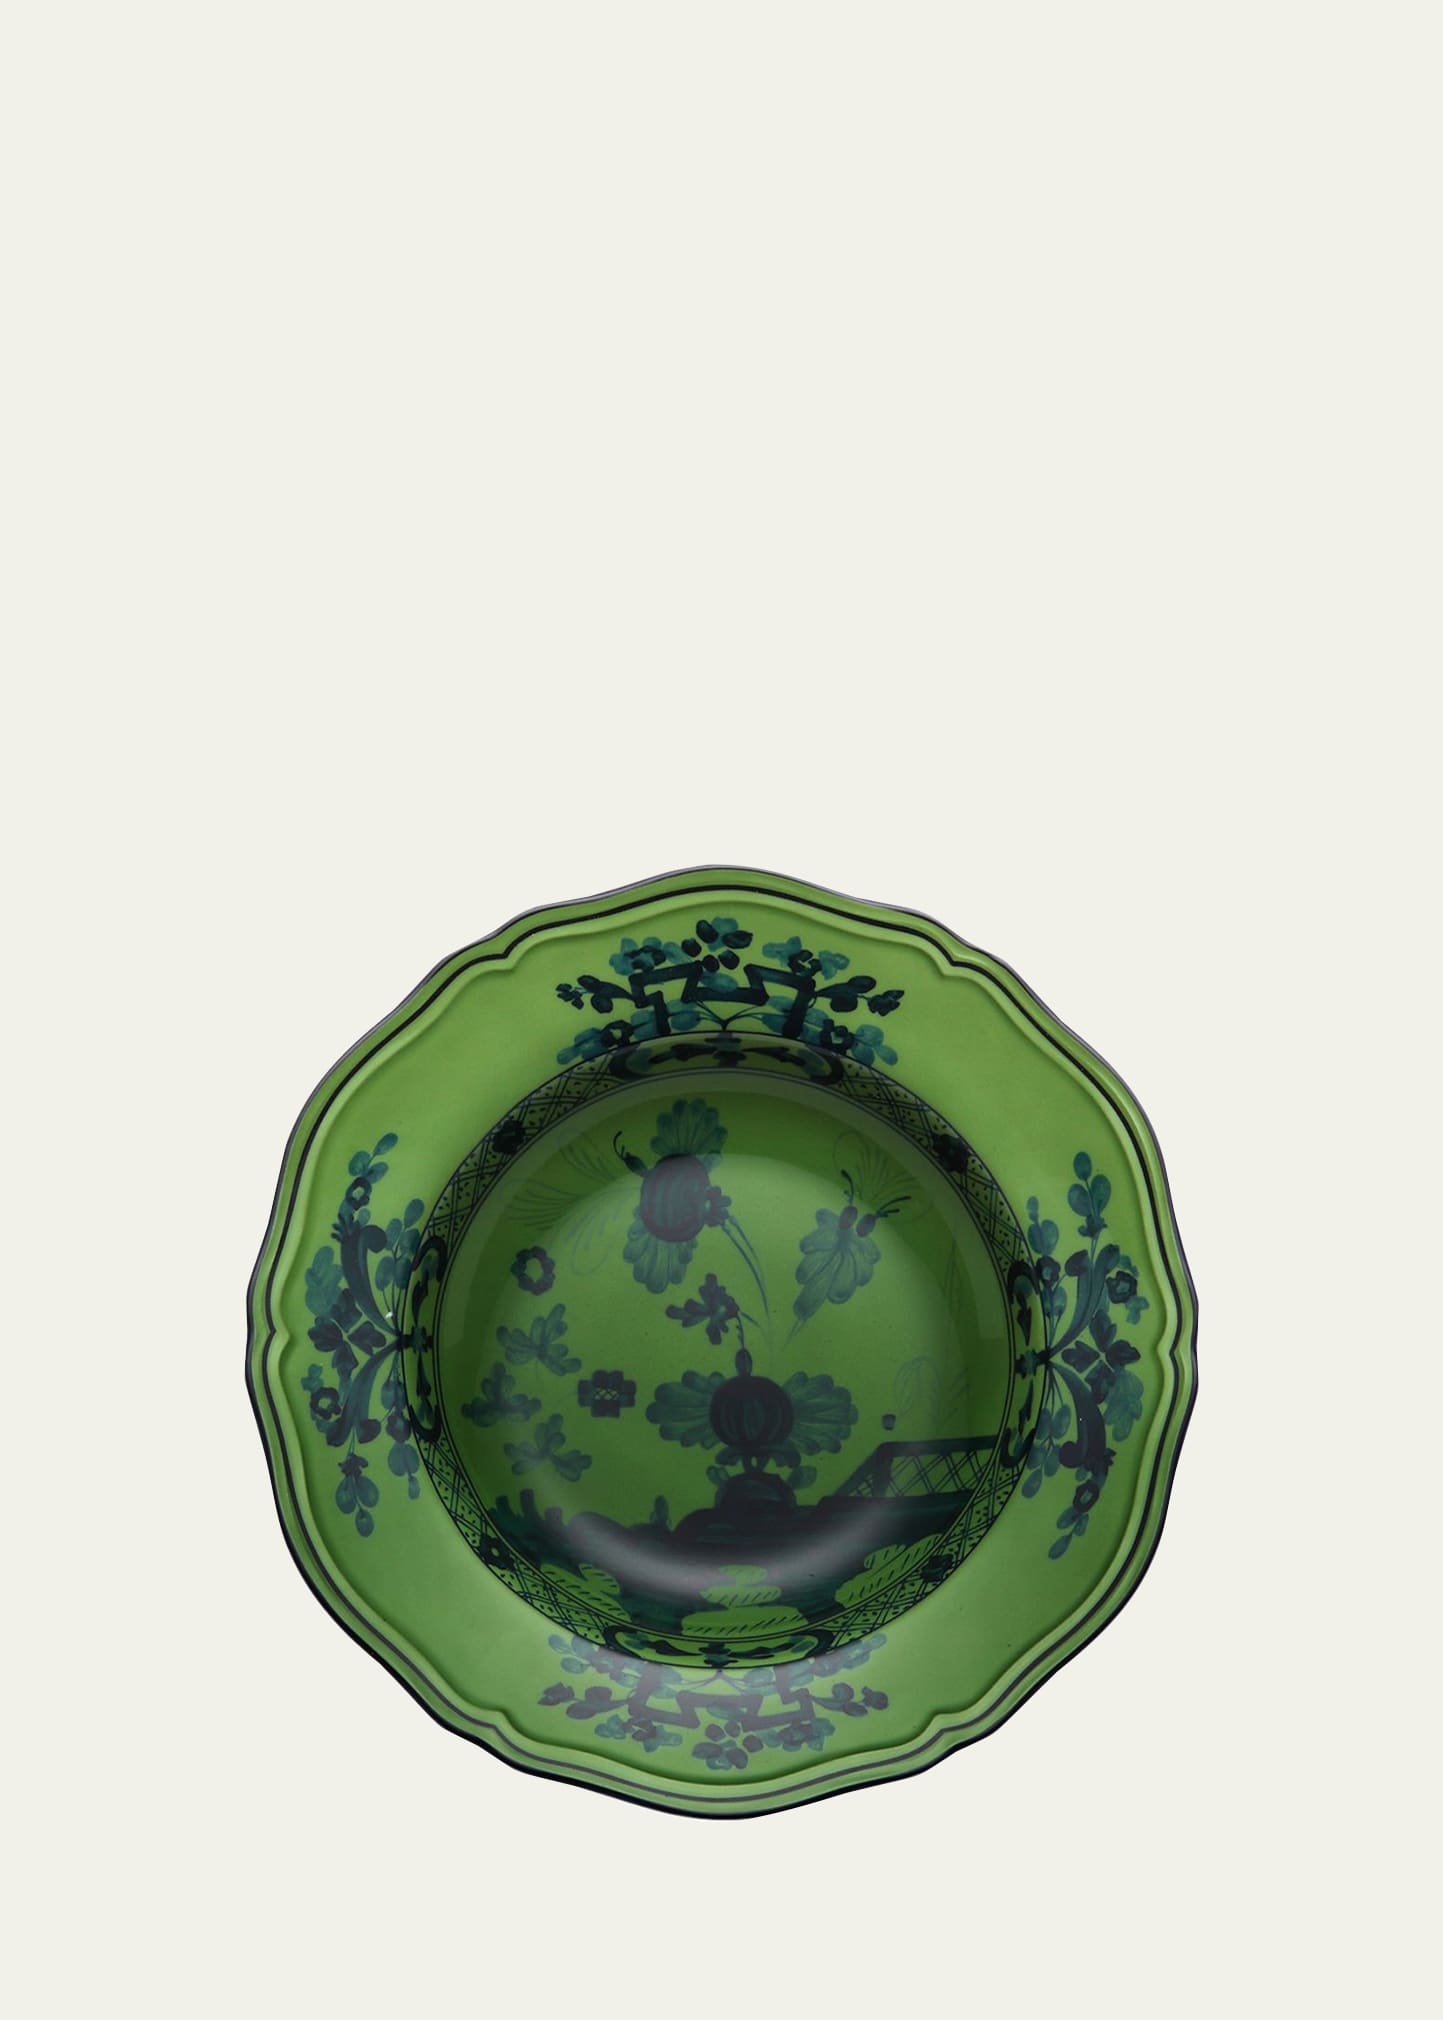 GINORI 1735 Oriente Italiano Soup Plate, Malachite